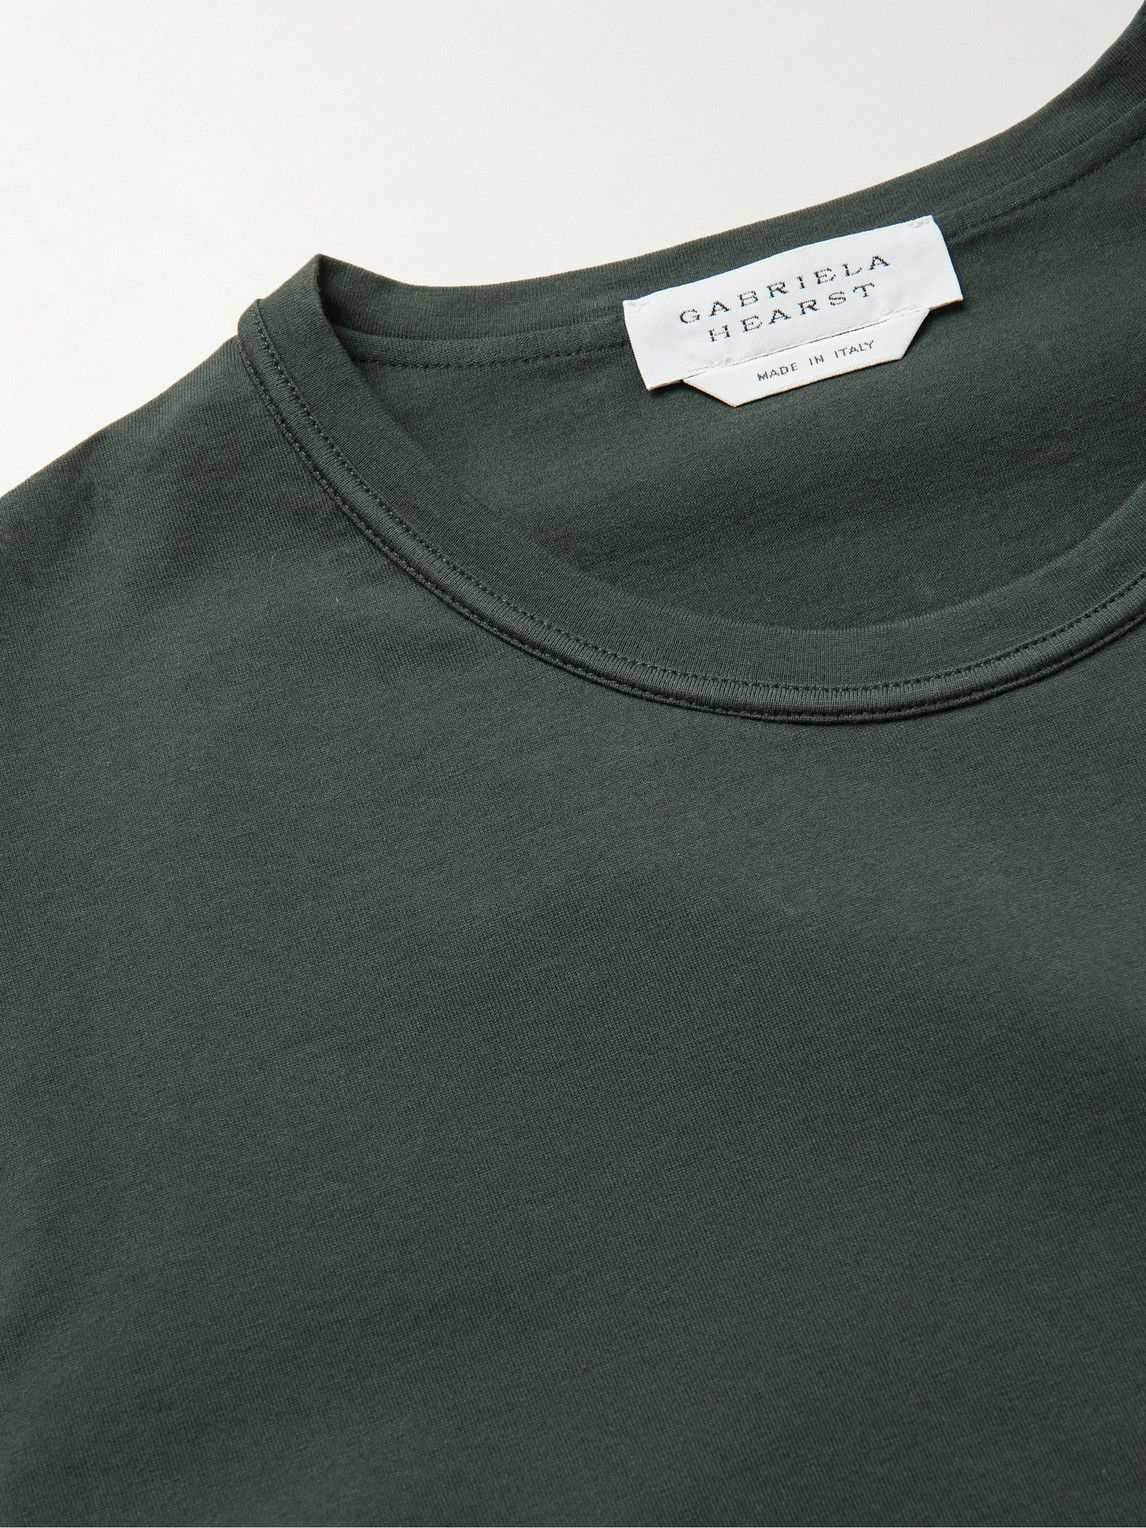 Gabriela Hearst - Bandeira Cotton-Jersey T-Shirt - Green Gabriela Hearst